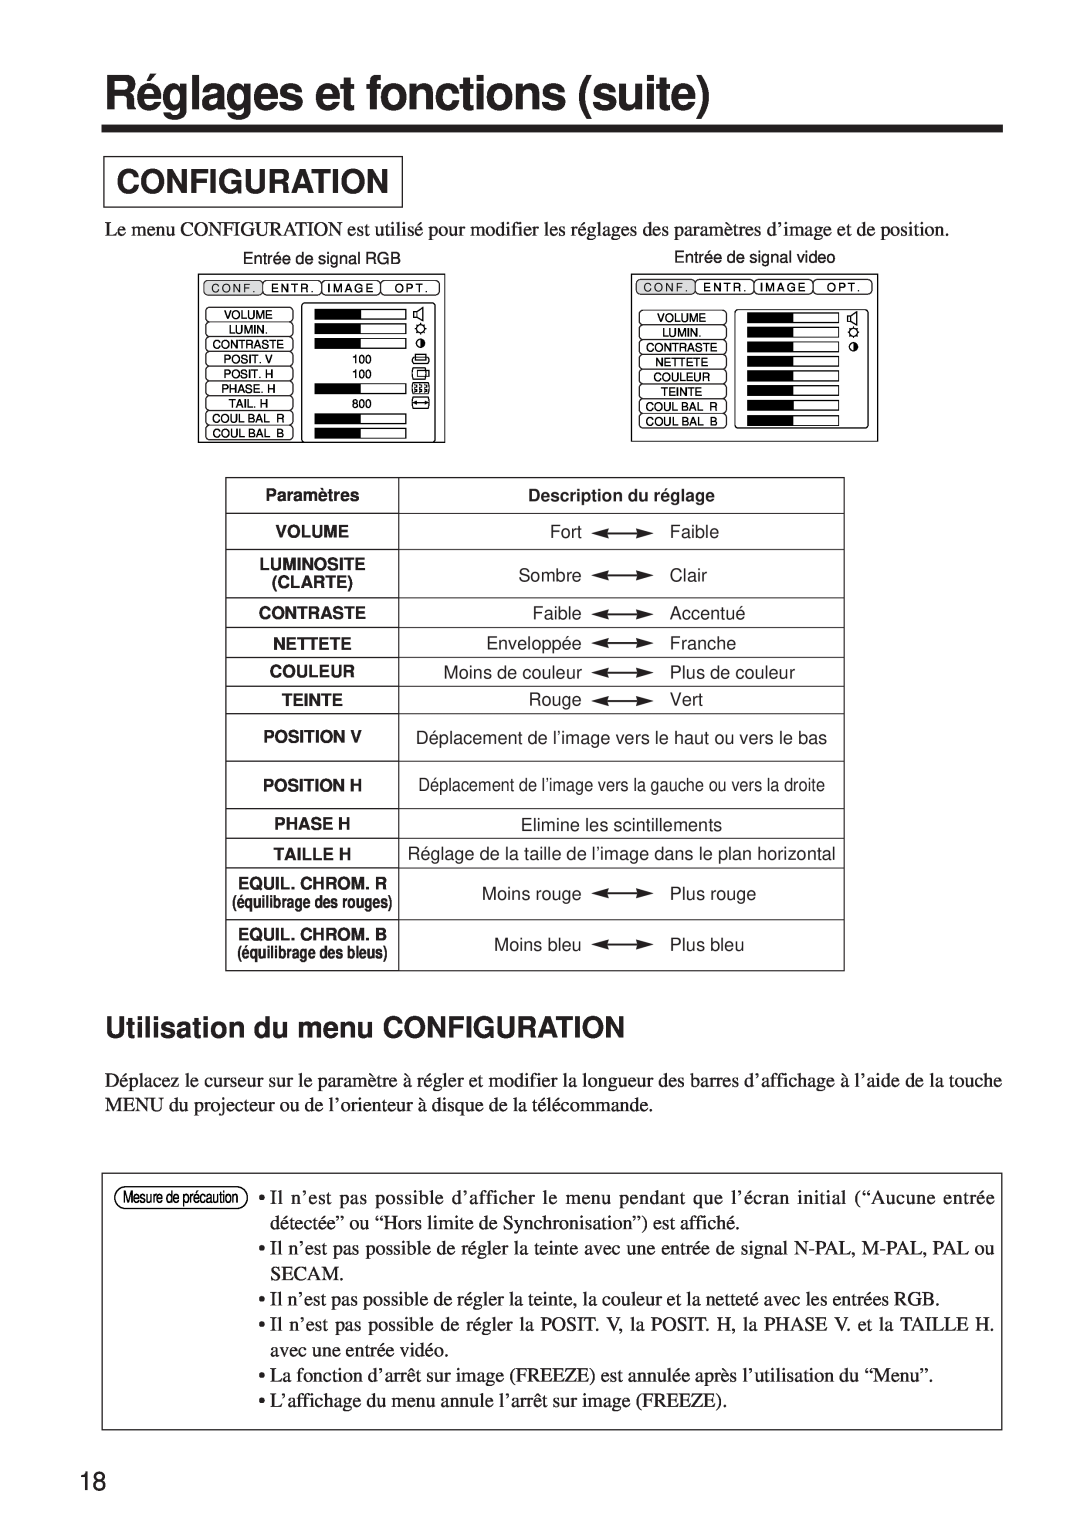 BOXLIGHT MP-650i user manual Réglages et fonctions suite, Configuration, Utilisation du menu CONFIGURATION 